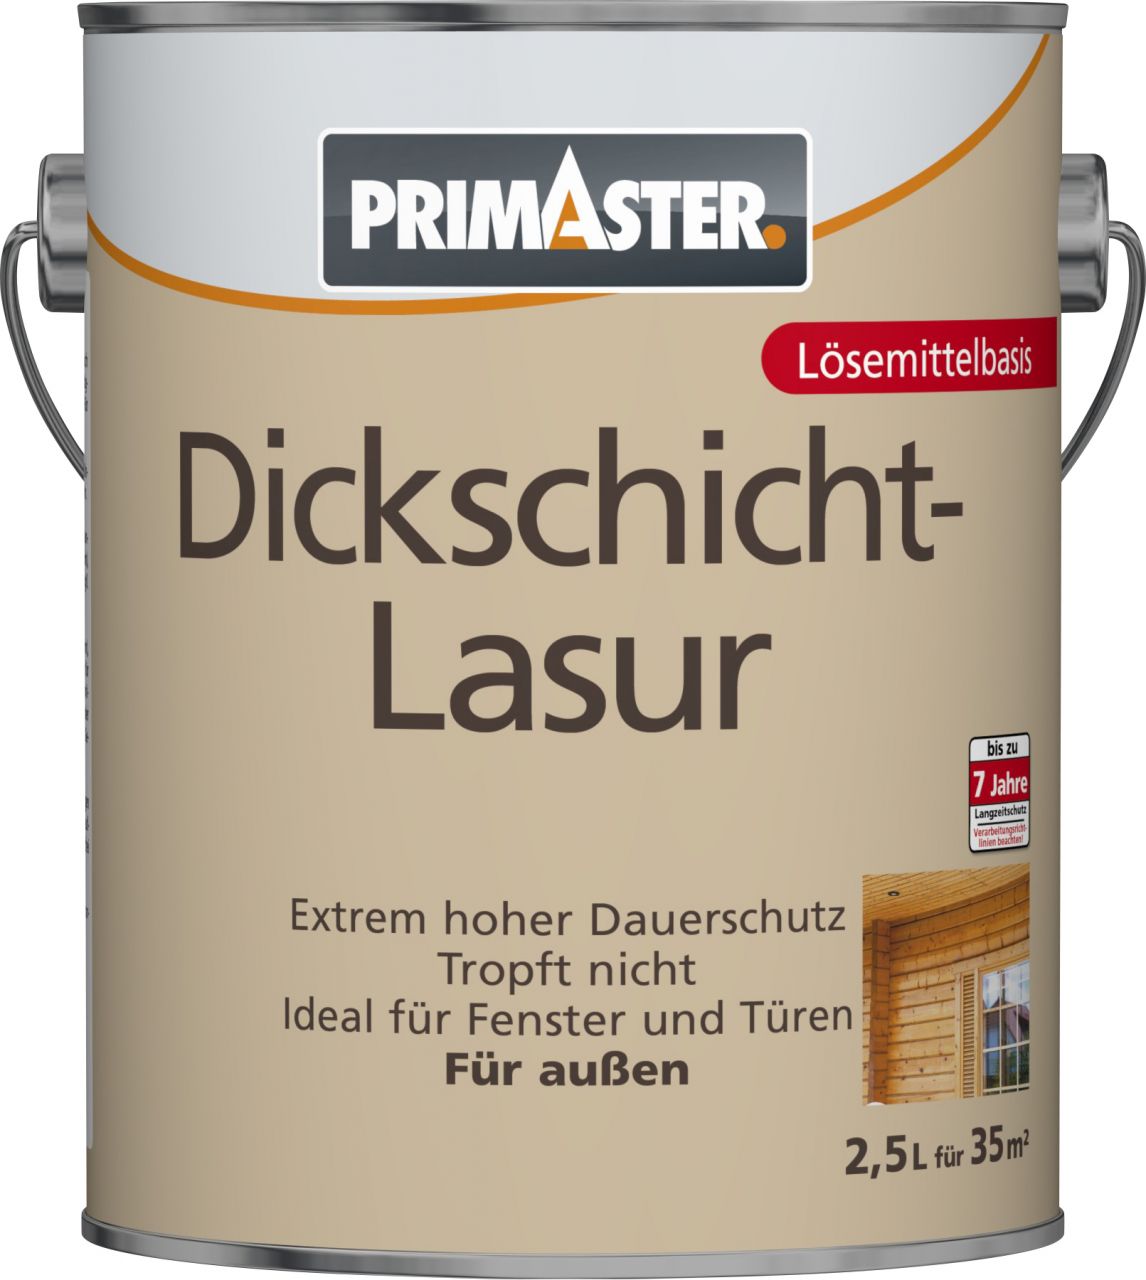 Primaster Dickschichtlasur 2,5 L nussbaum GLO765153193